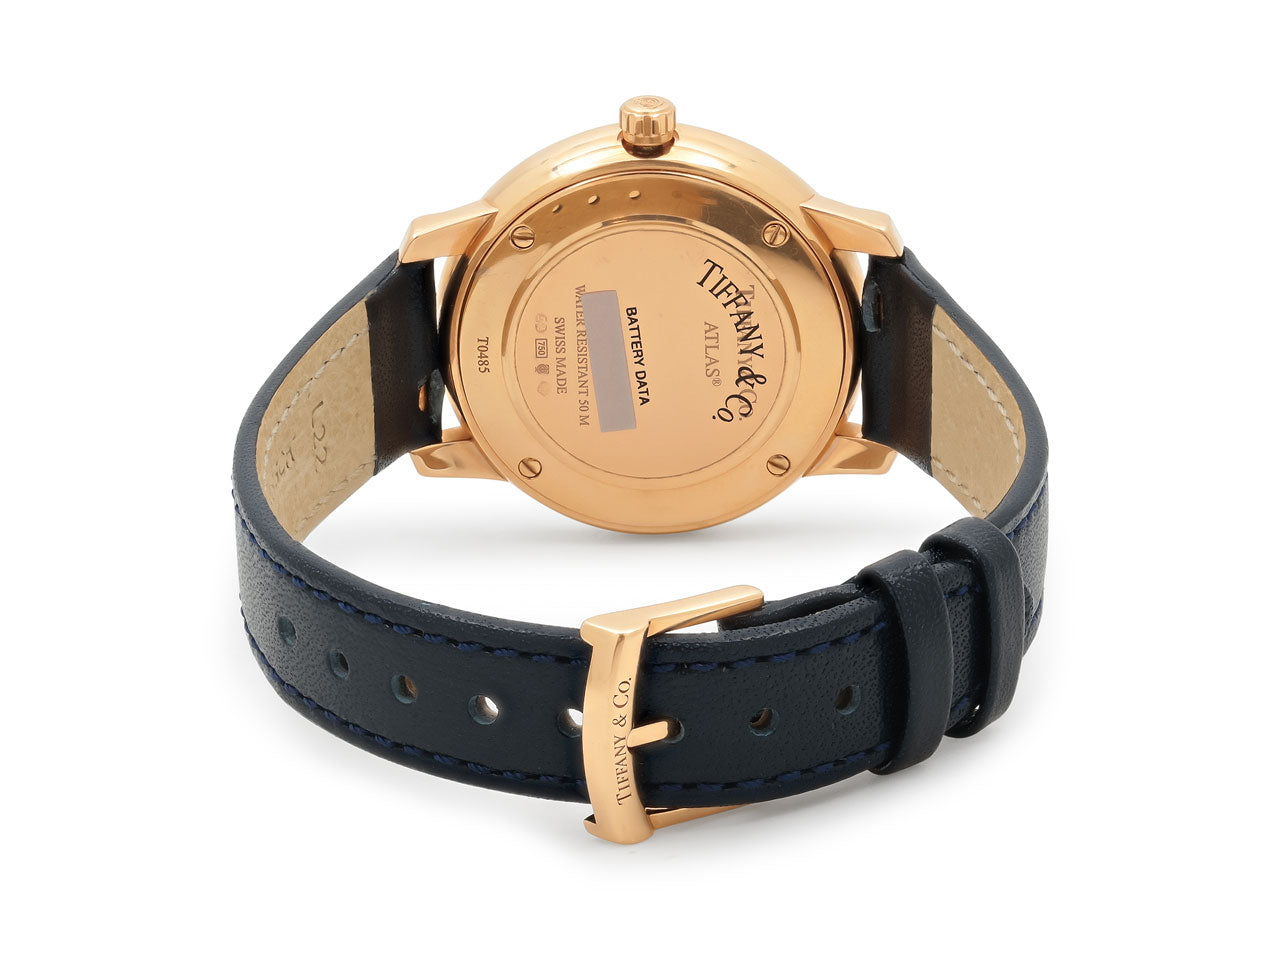 Tiffany & Co. 'Atlas' Watch in 18K Rose Gold, 31 mm